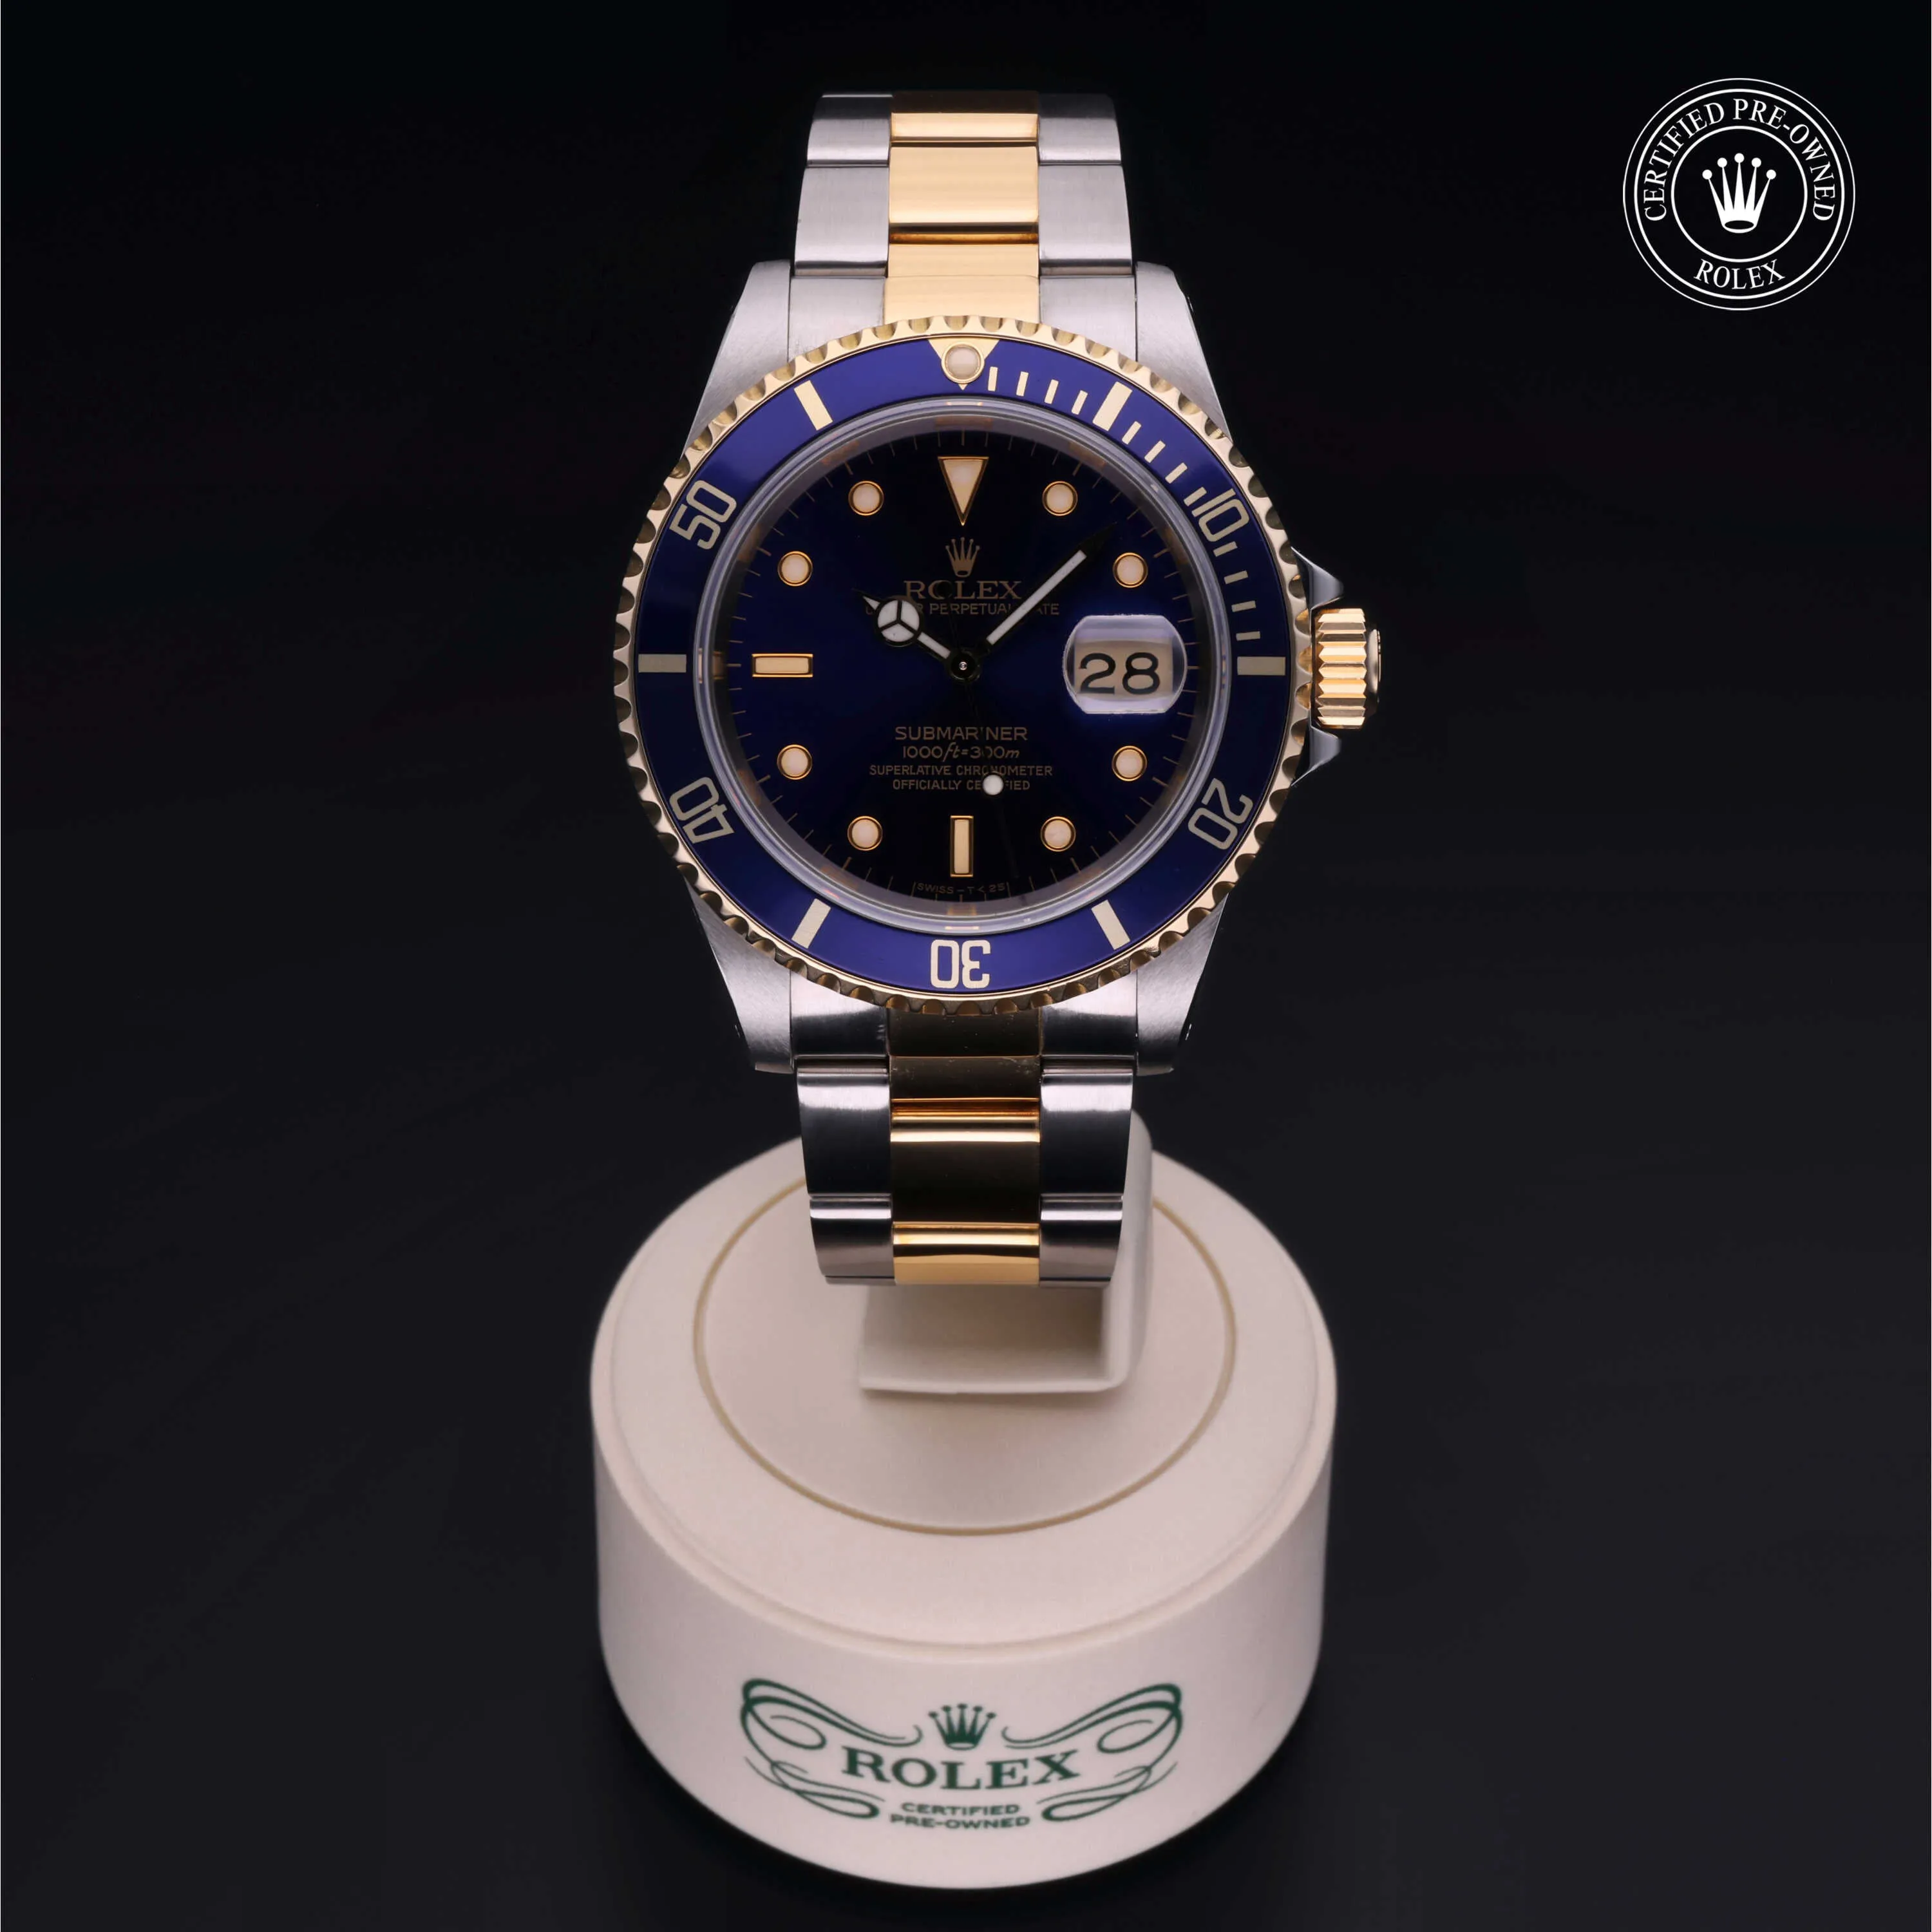 Rolex Submariner 16613 40mm Stainless steel blu